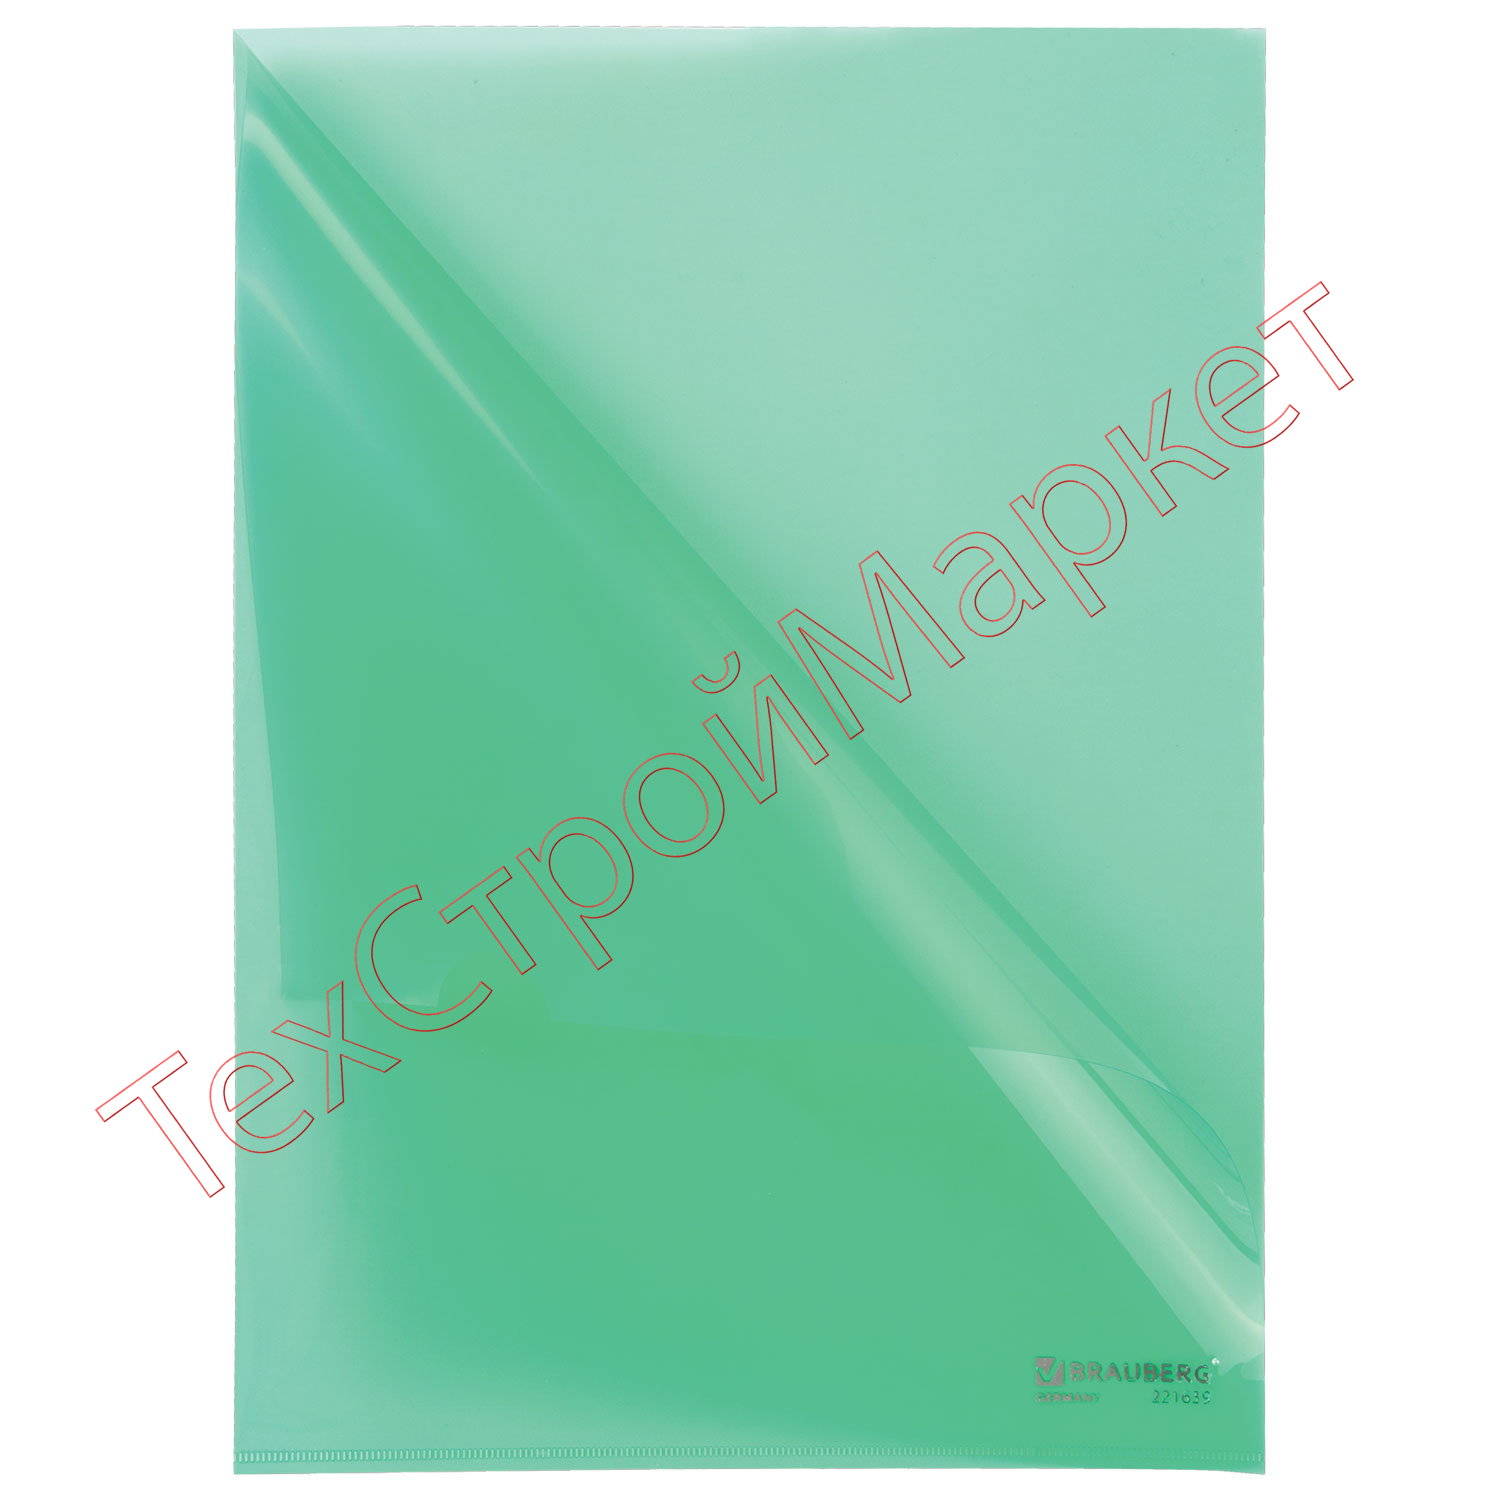 Папка-уголок жесткая BRAUBERG, зеленая, 0,15 мм, 221639